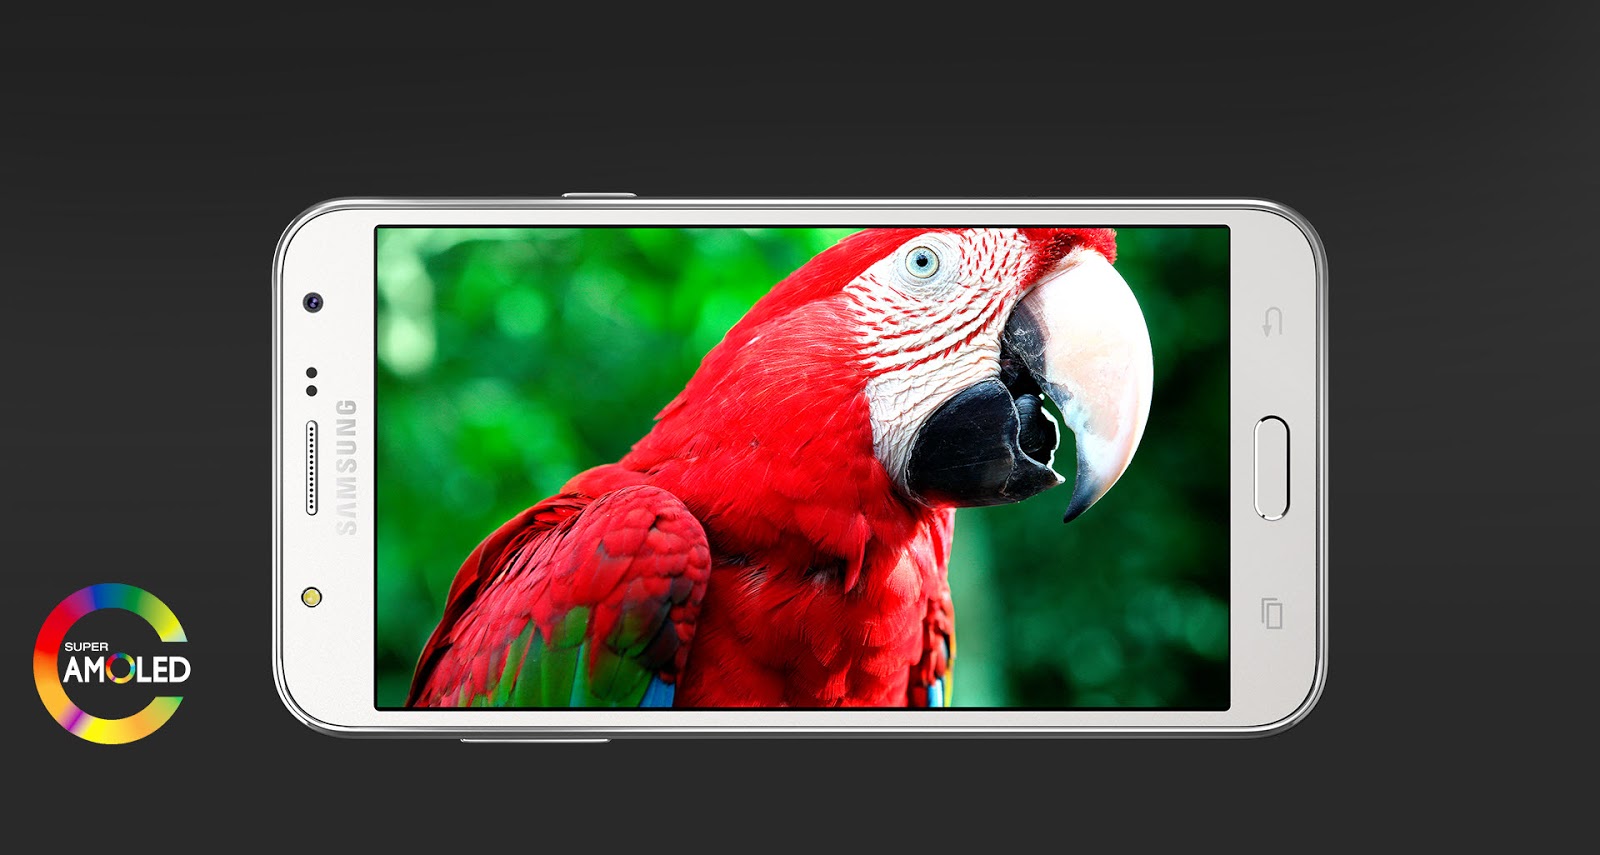 Harga Dan Spesifikasi Samsung Galaxy J5 - Berita Gadget